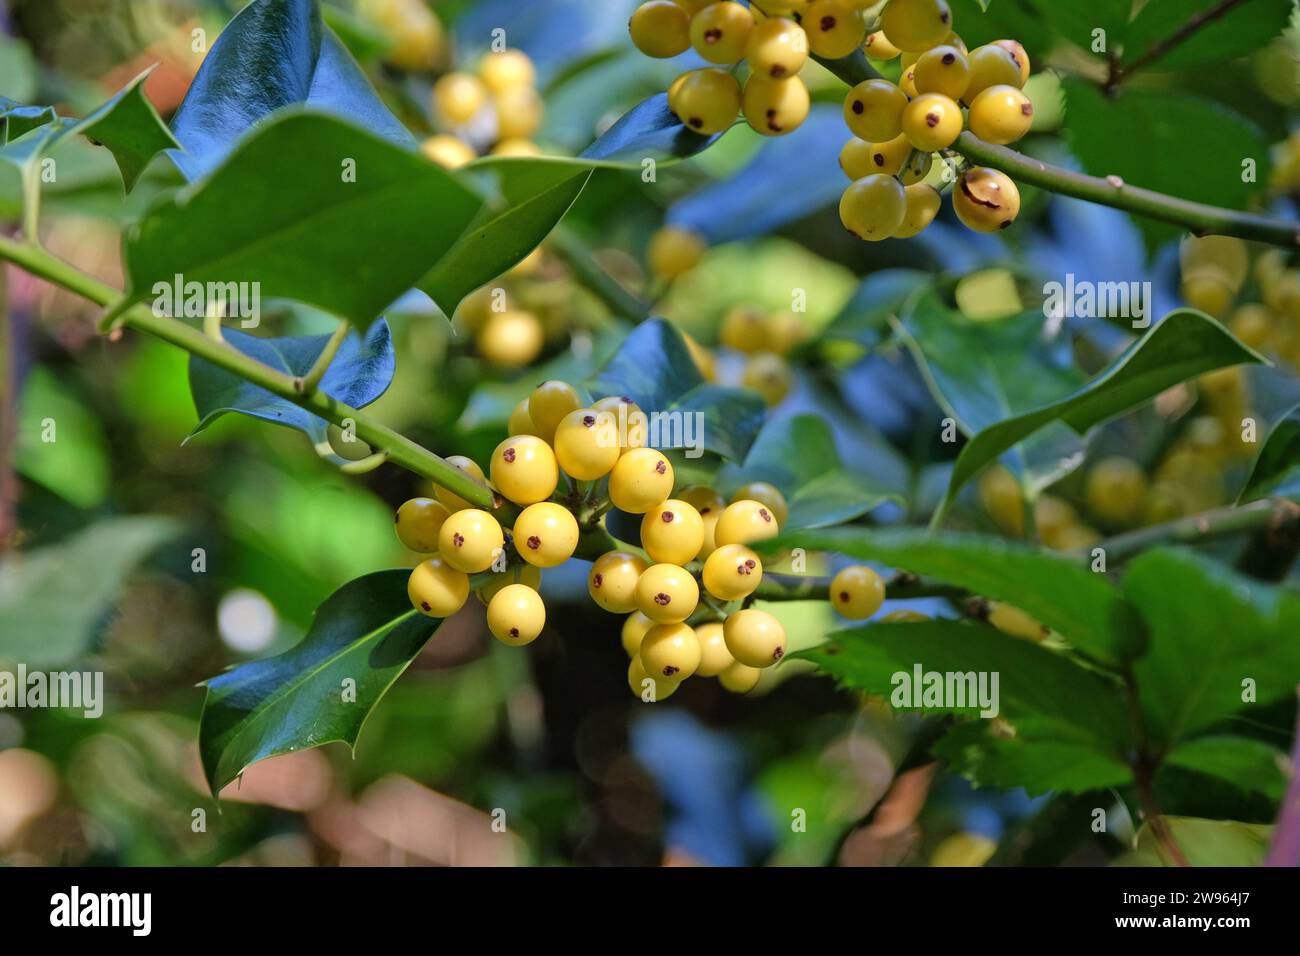 The yellow berries of the Ilex aquifolium 'BacciflavaÕ, yellow berried holly bush. Stock Photo